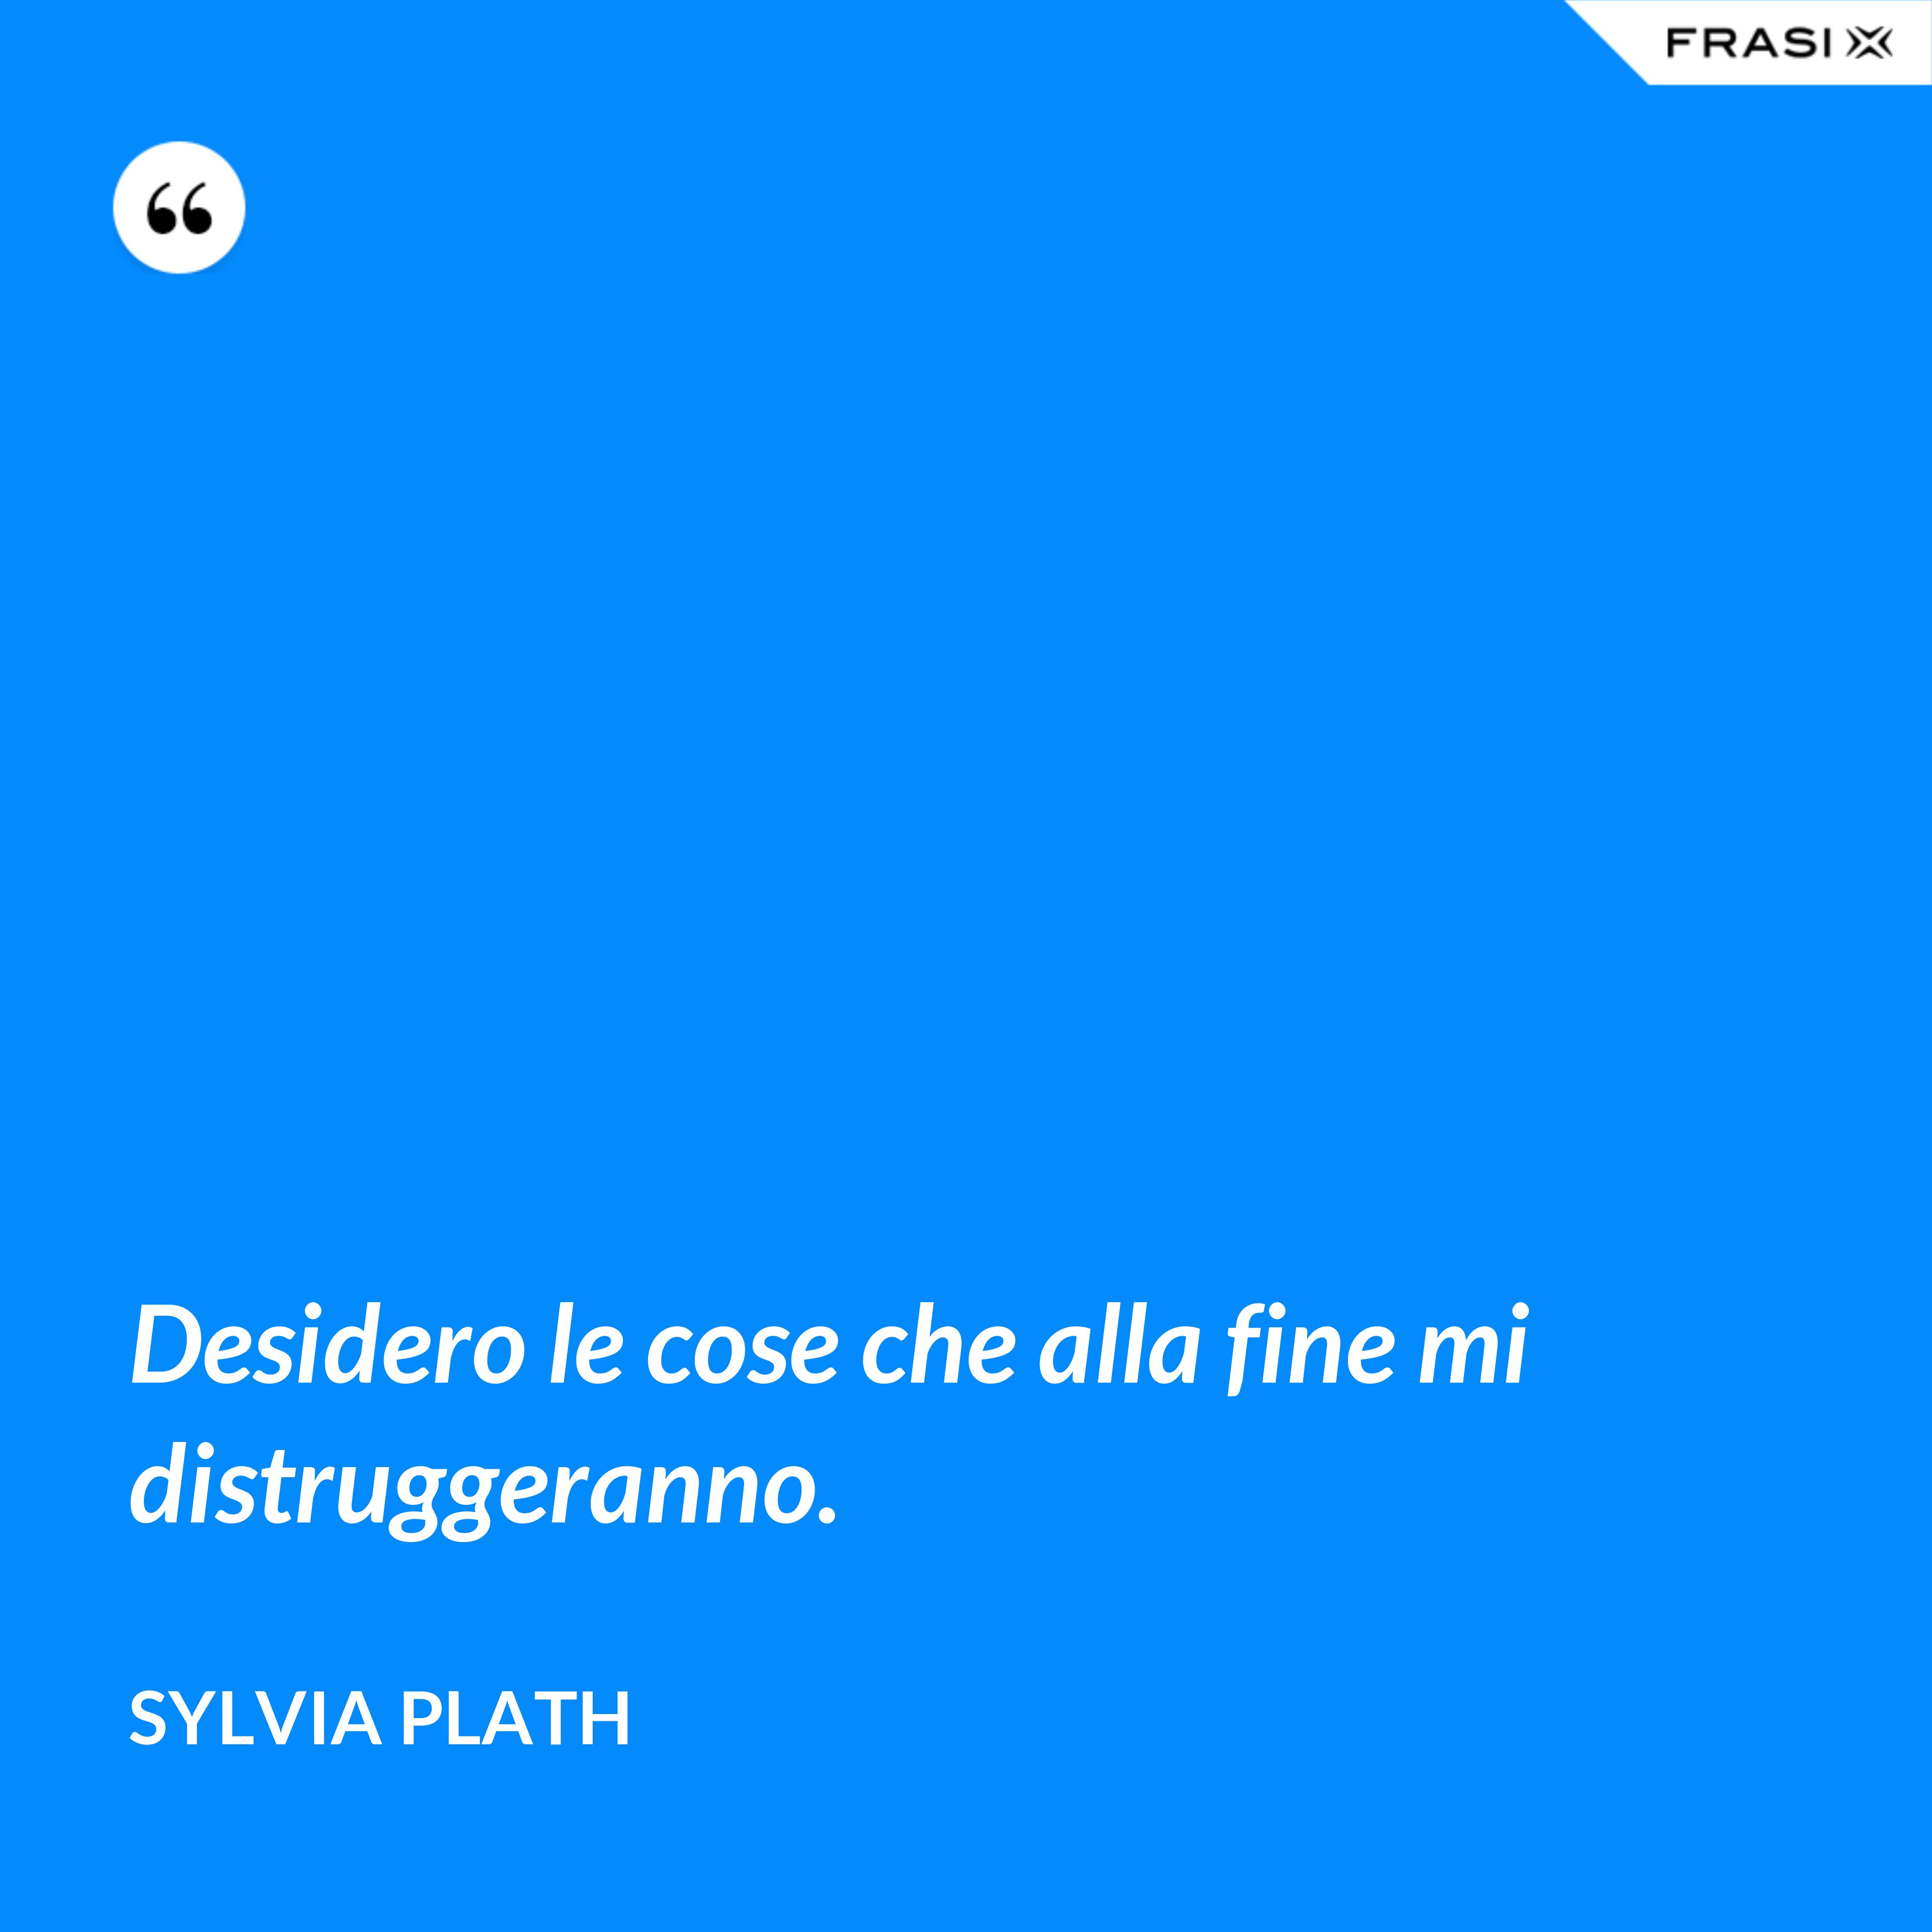 Desidero le cose che alla fine mi distruggeranno. - Sylvia Plath